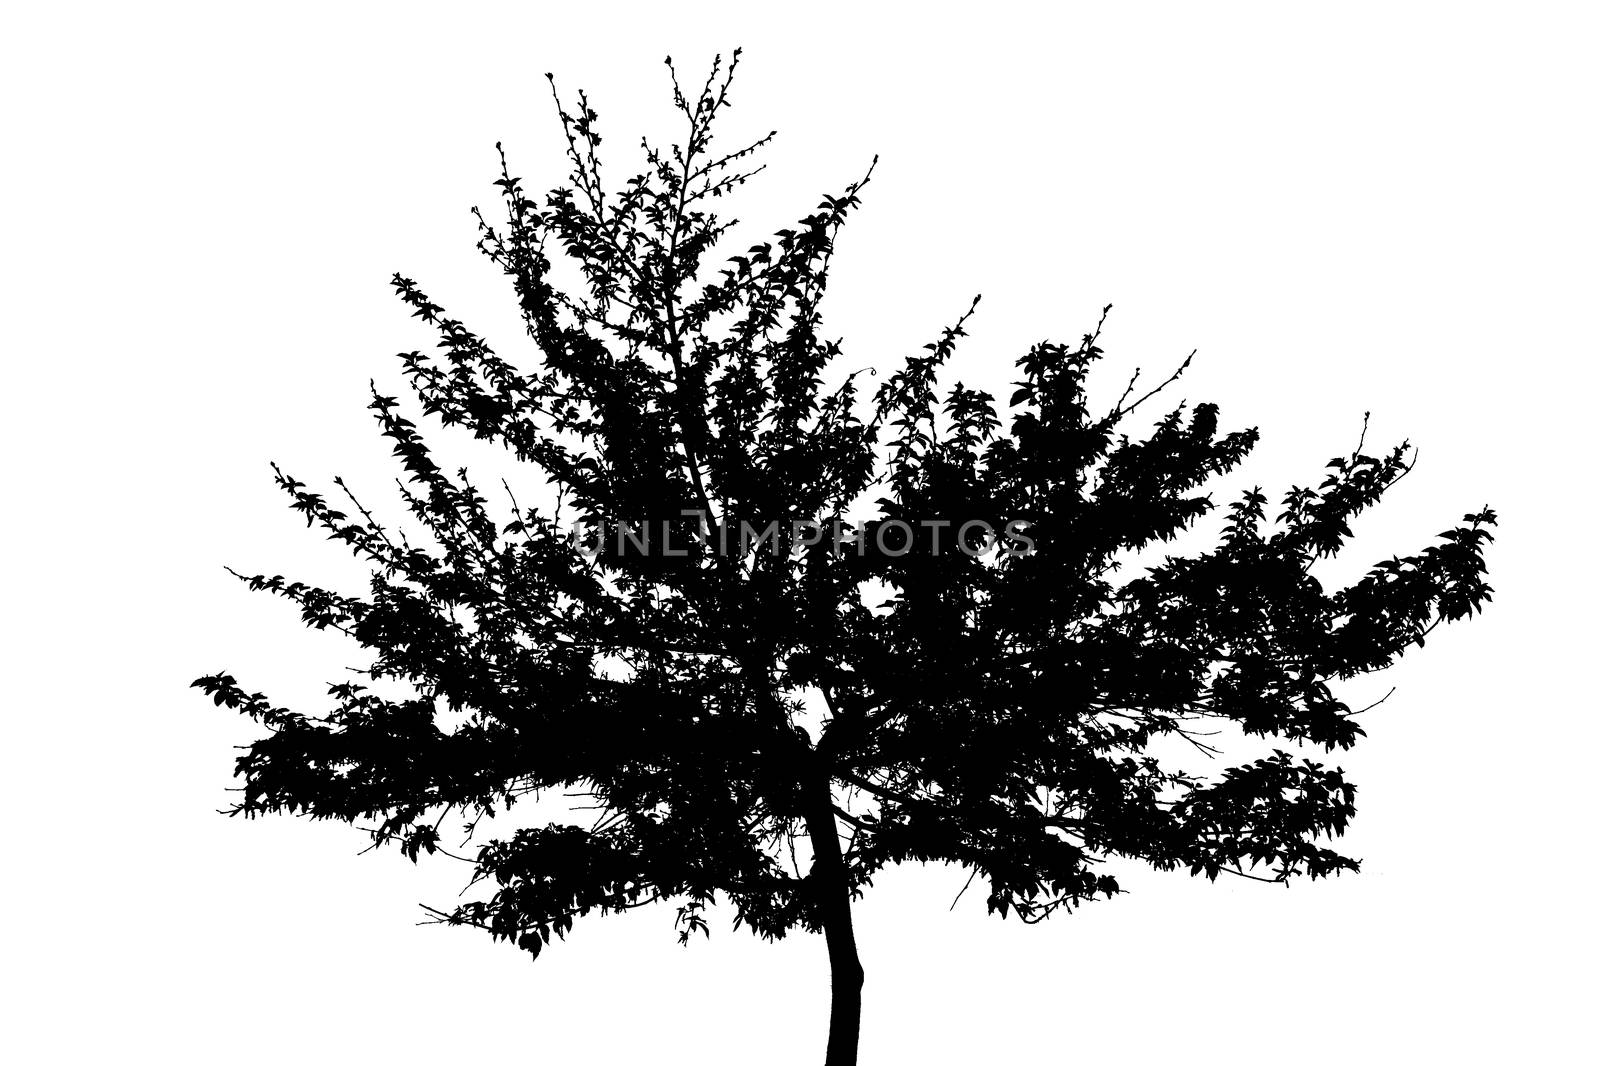 tree silhouette by kokimk